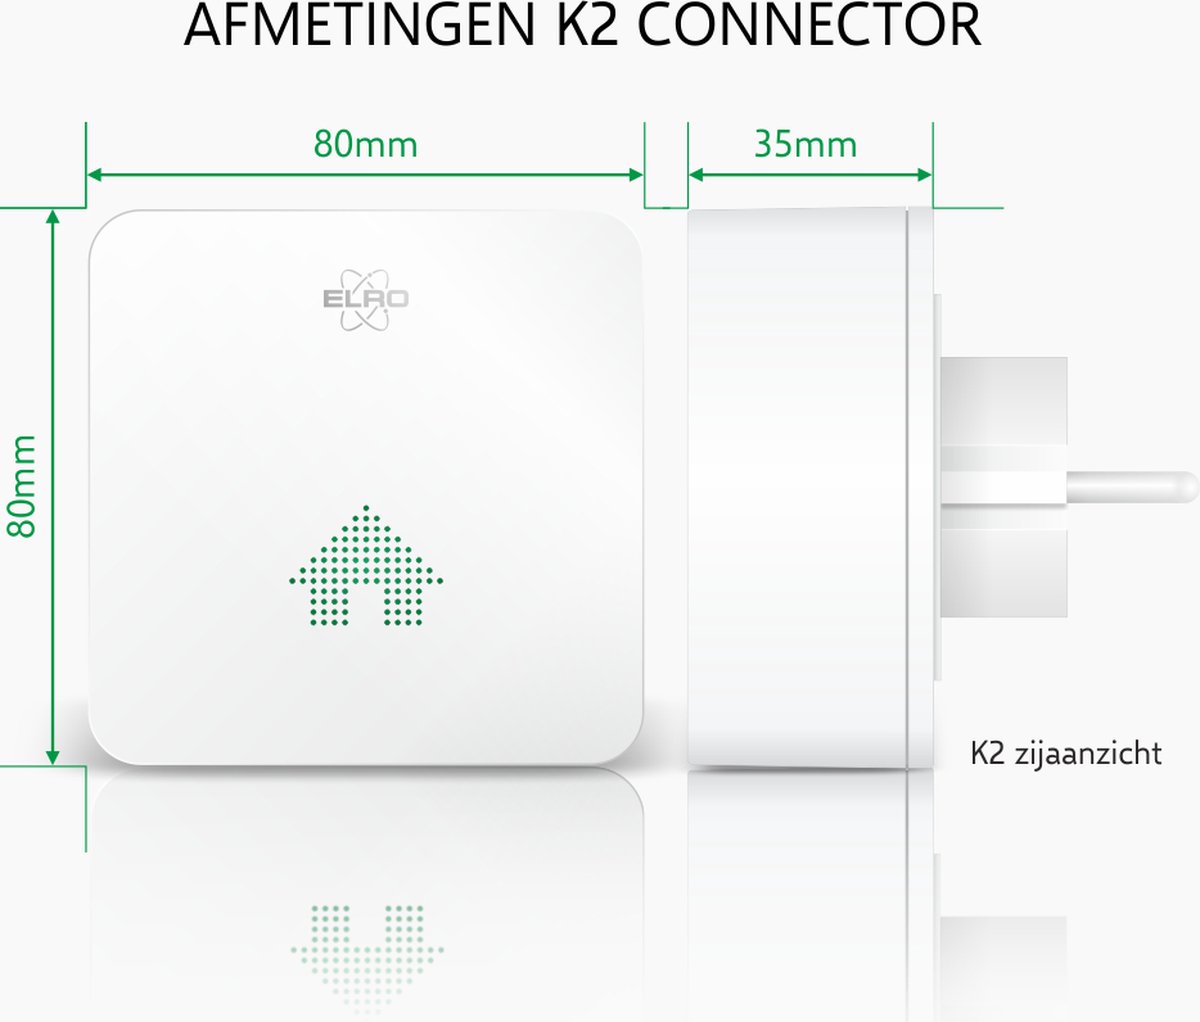 Le connecteur K2 d'ELRO Connects est la station de base de votre système  ELRO Connects. Ce connecteur vous permet de connecter tous les produits  ELRO Connects à l'application ELRO Connects 2.0. ELRO